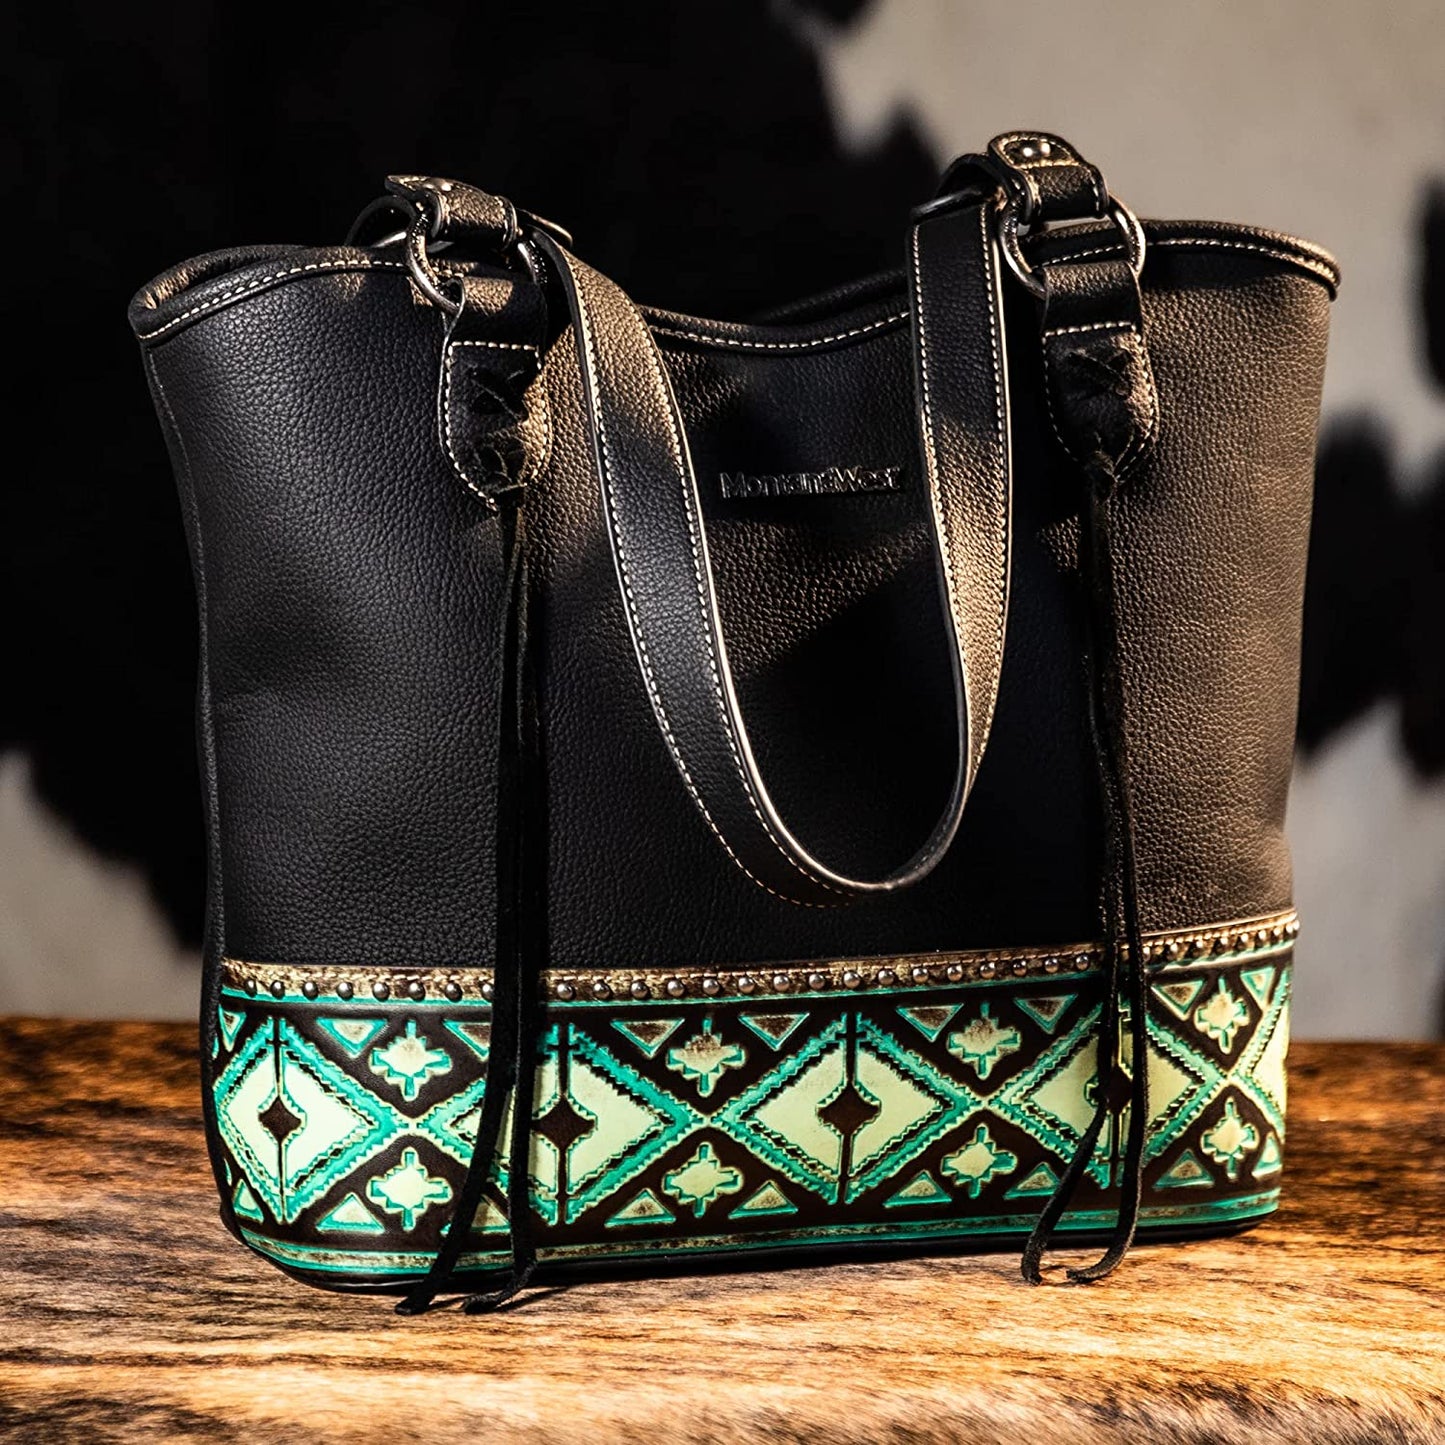 Montana West Women's Western Handbag Leather Shoulder Bag